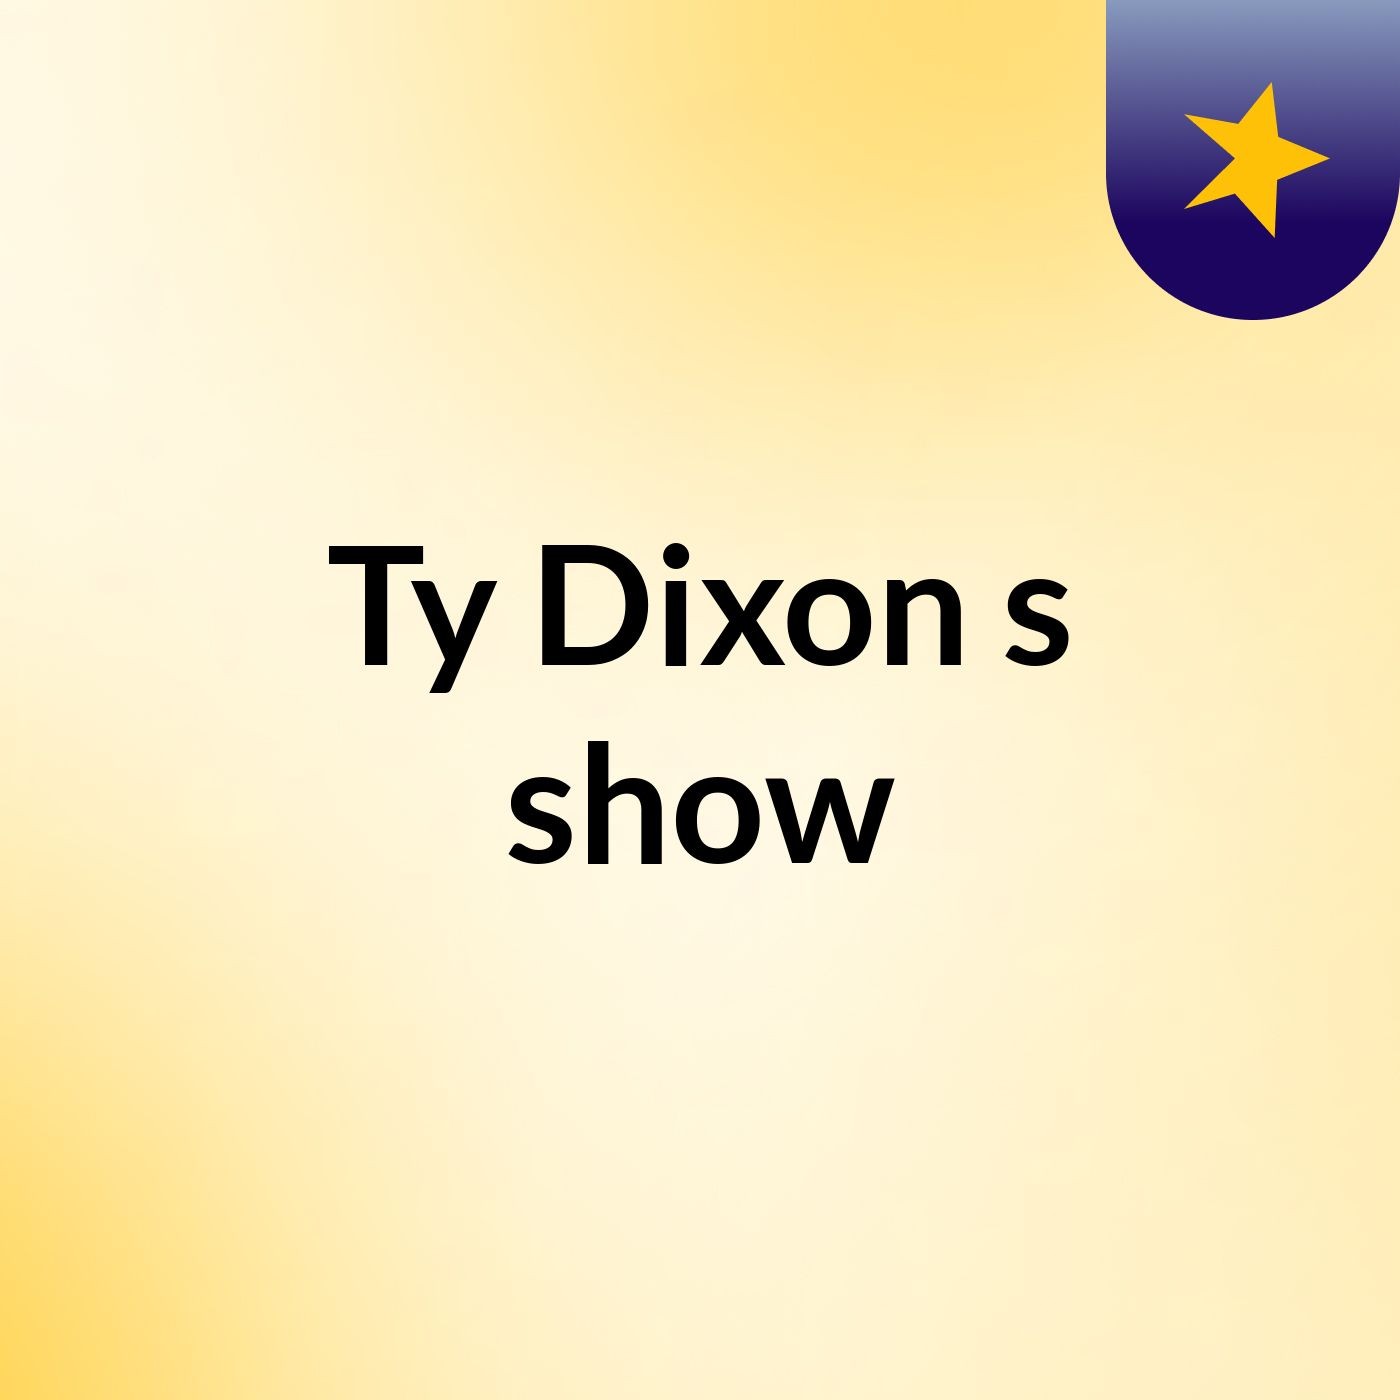 Ty Dixon's show